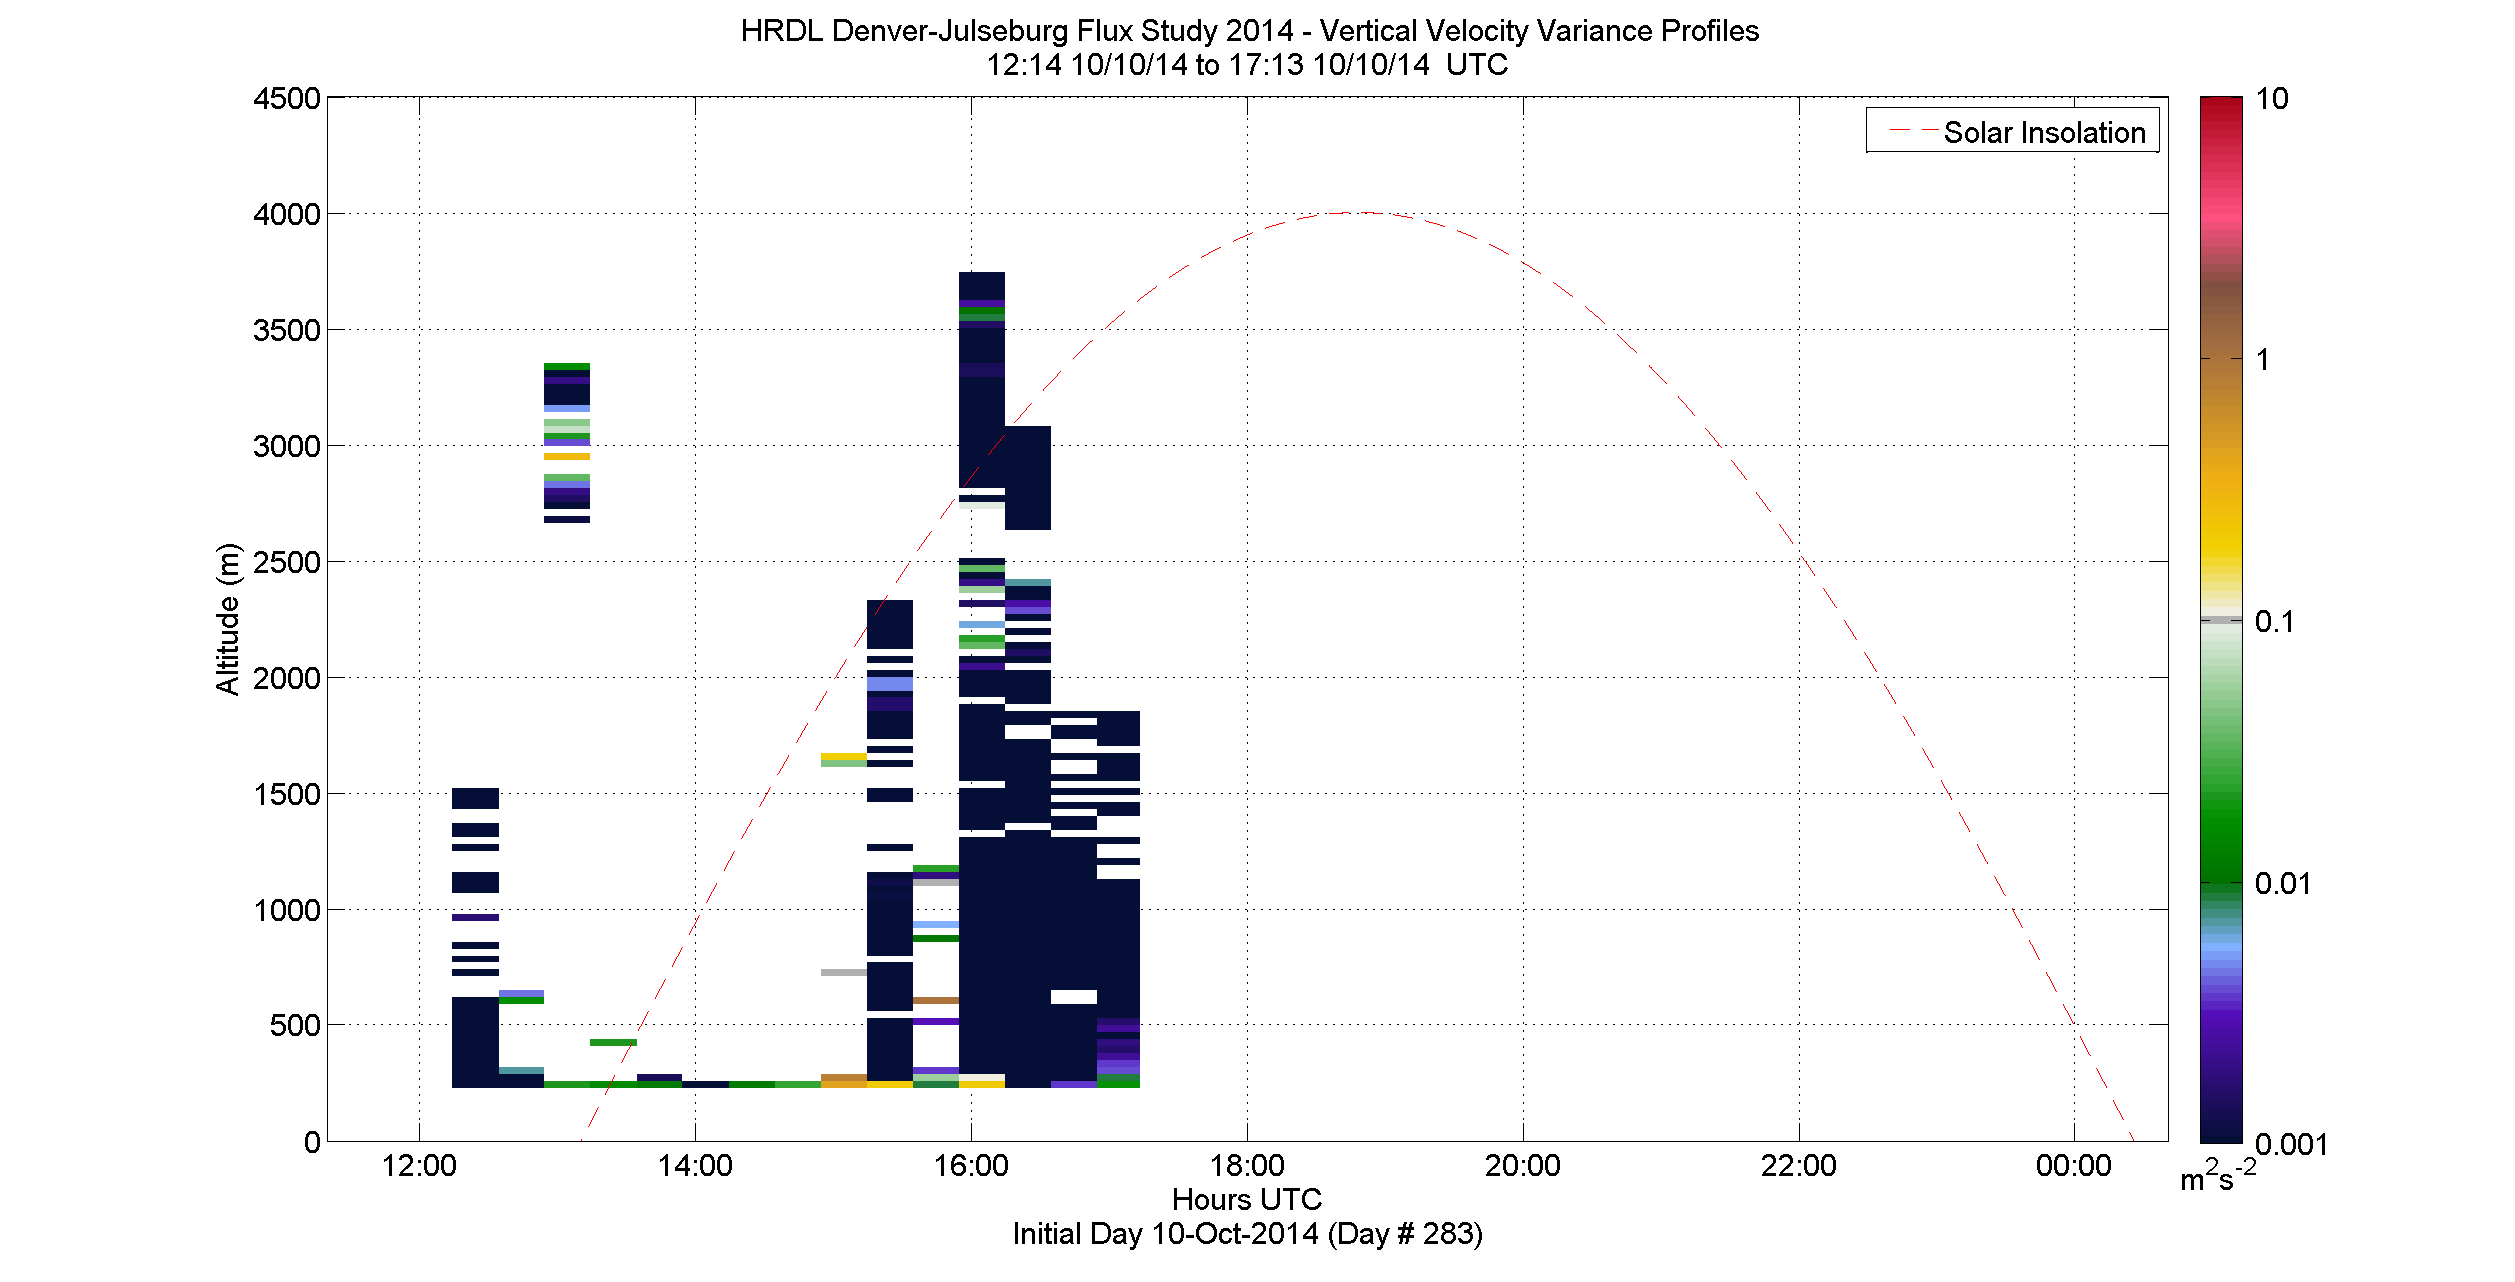 HRDL vertical variance profile - October 10 pm